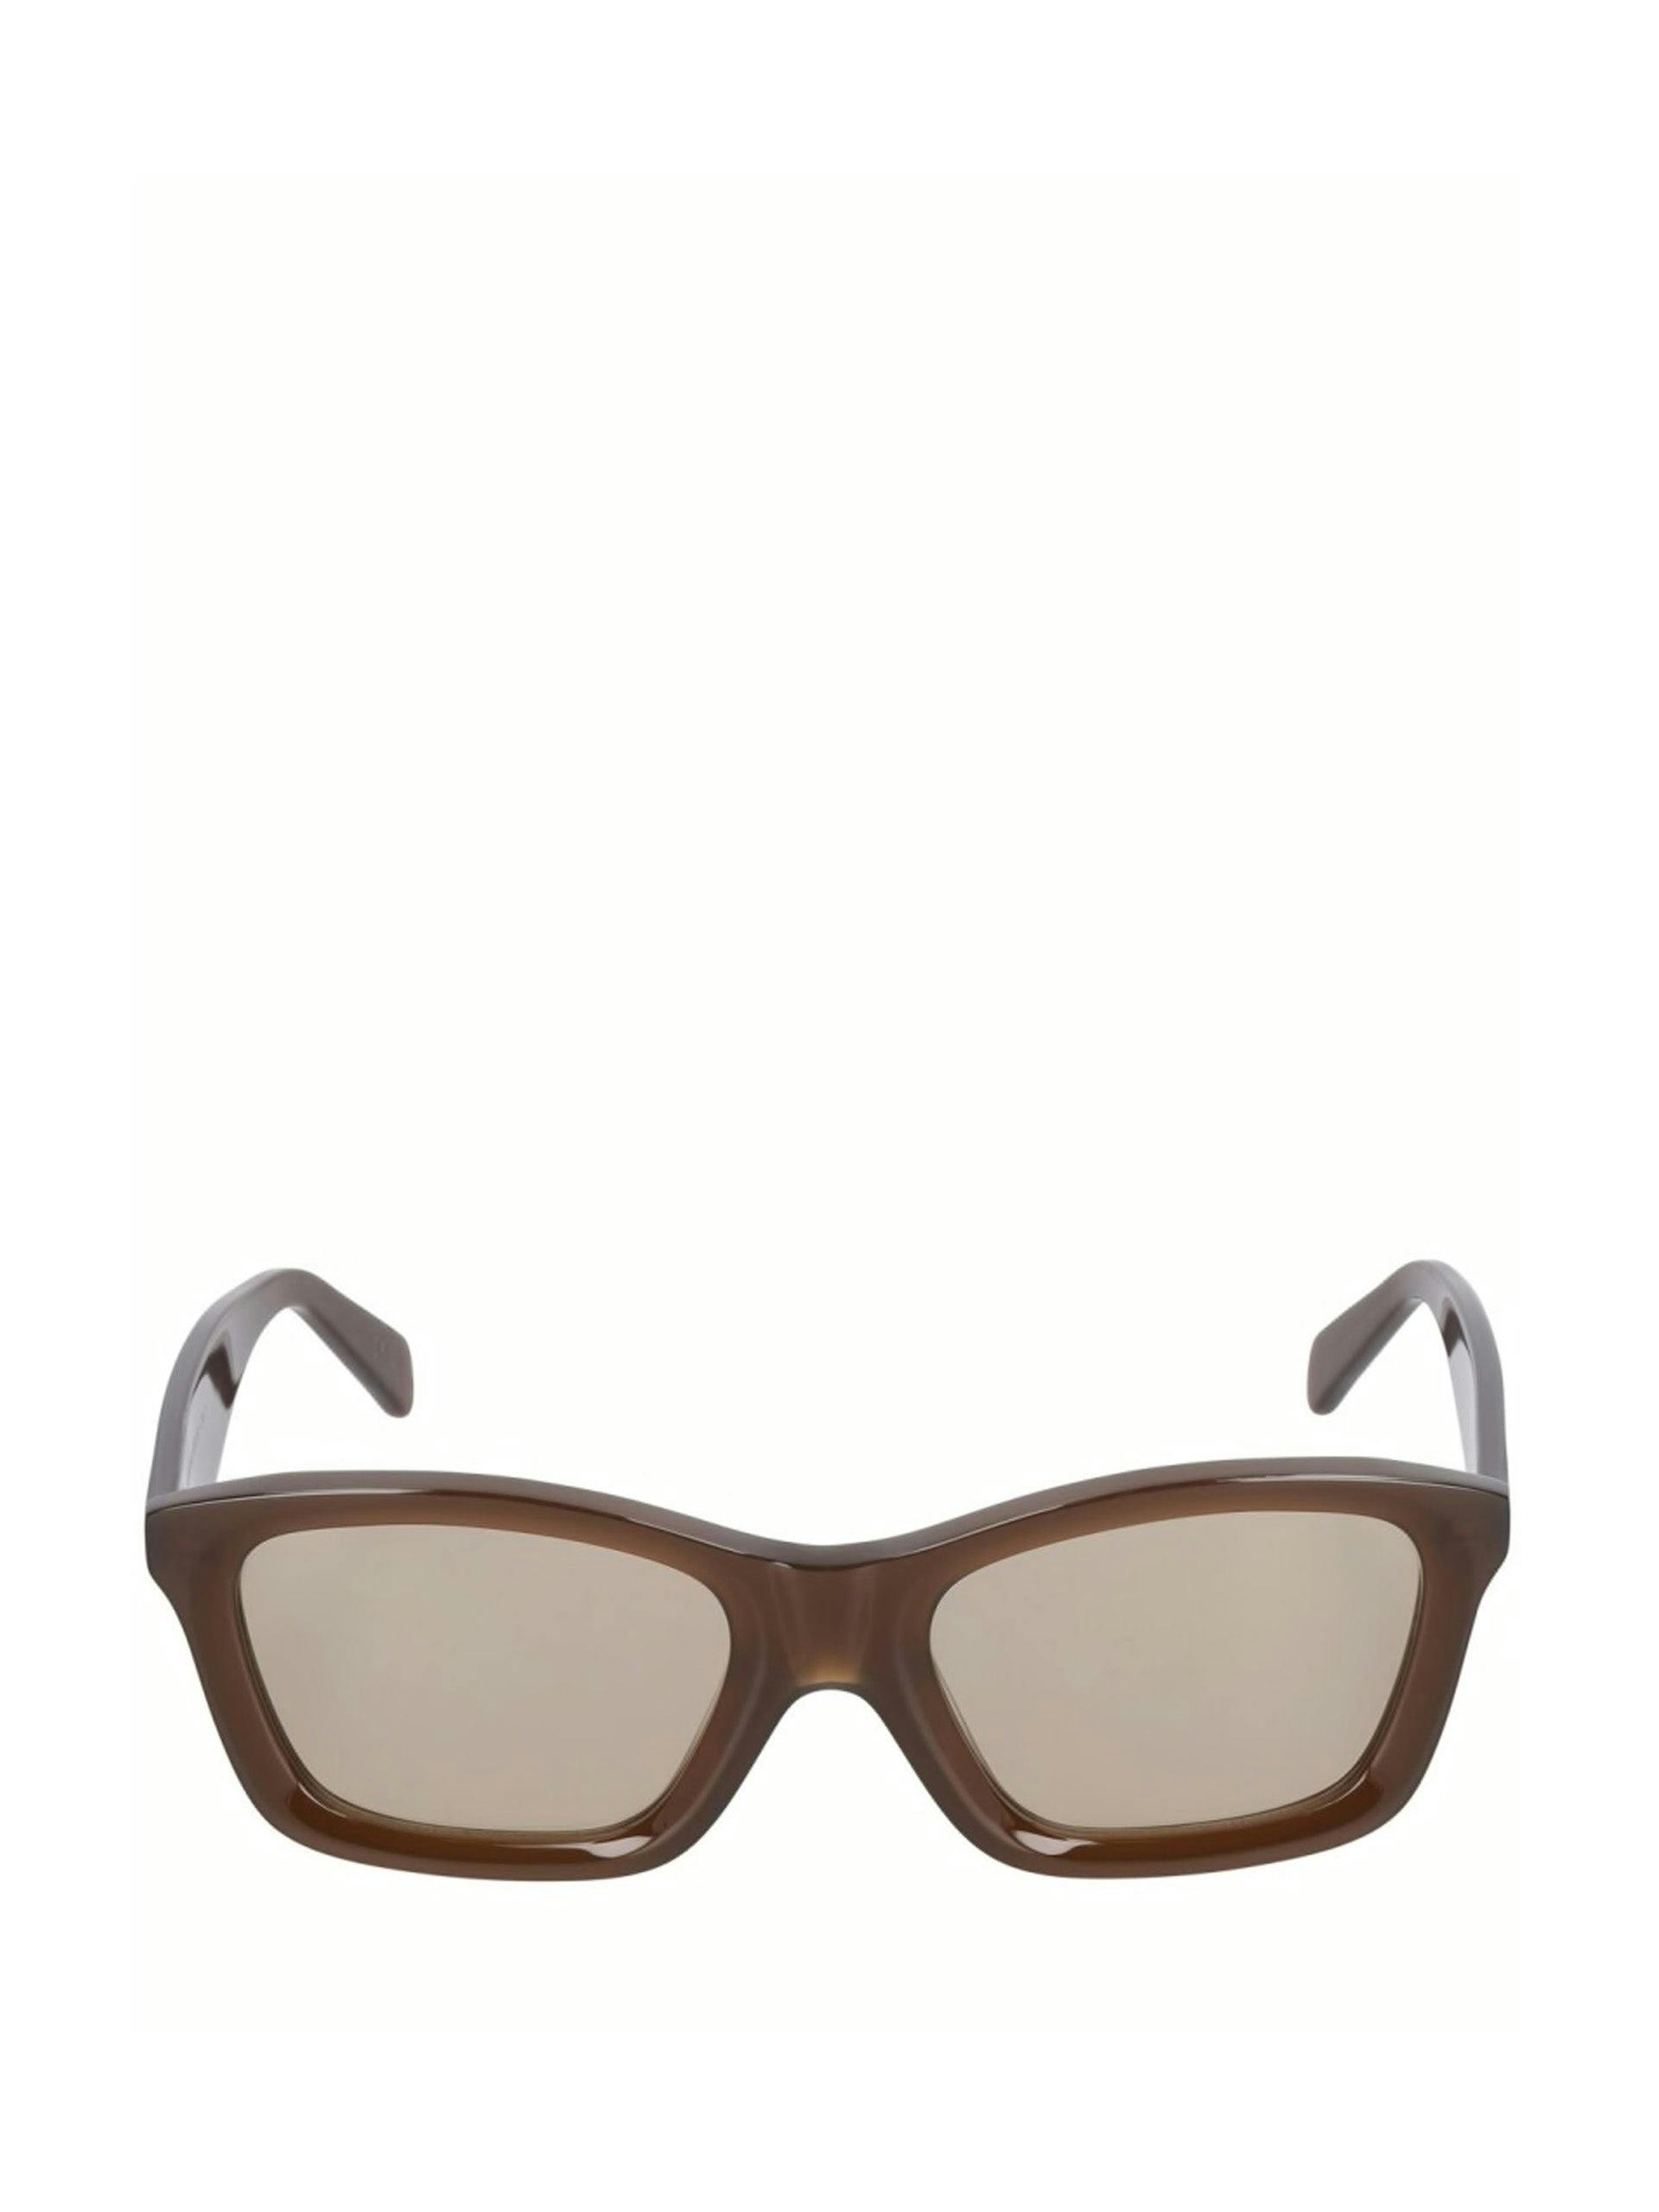 The Classic squared acetate sunglasses